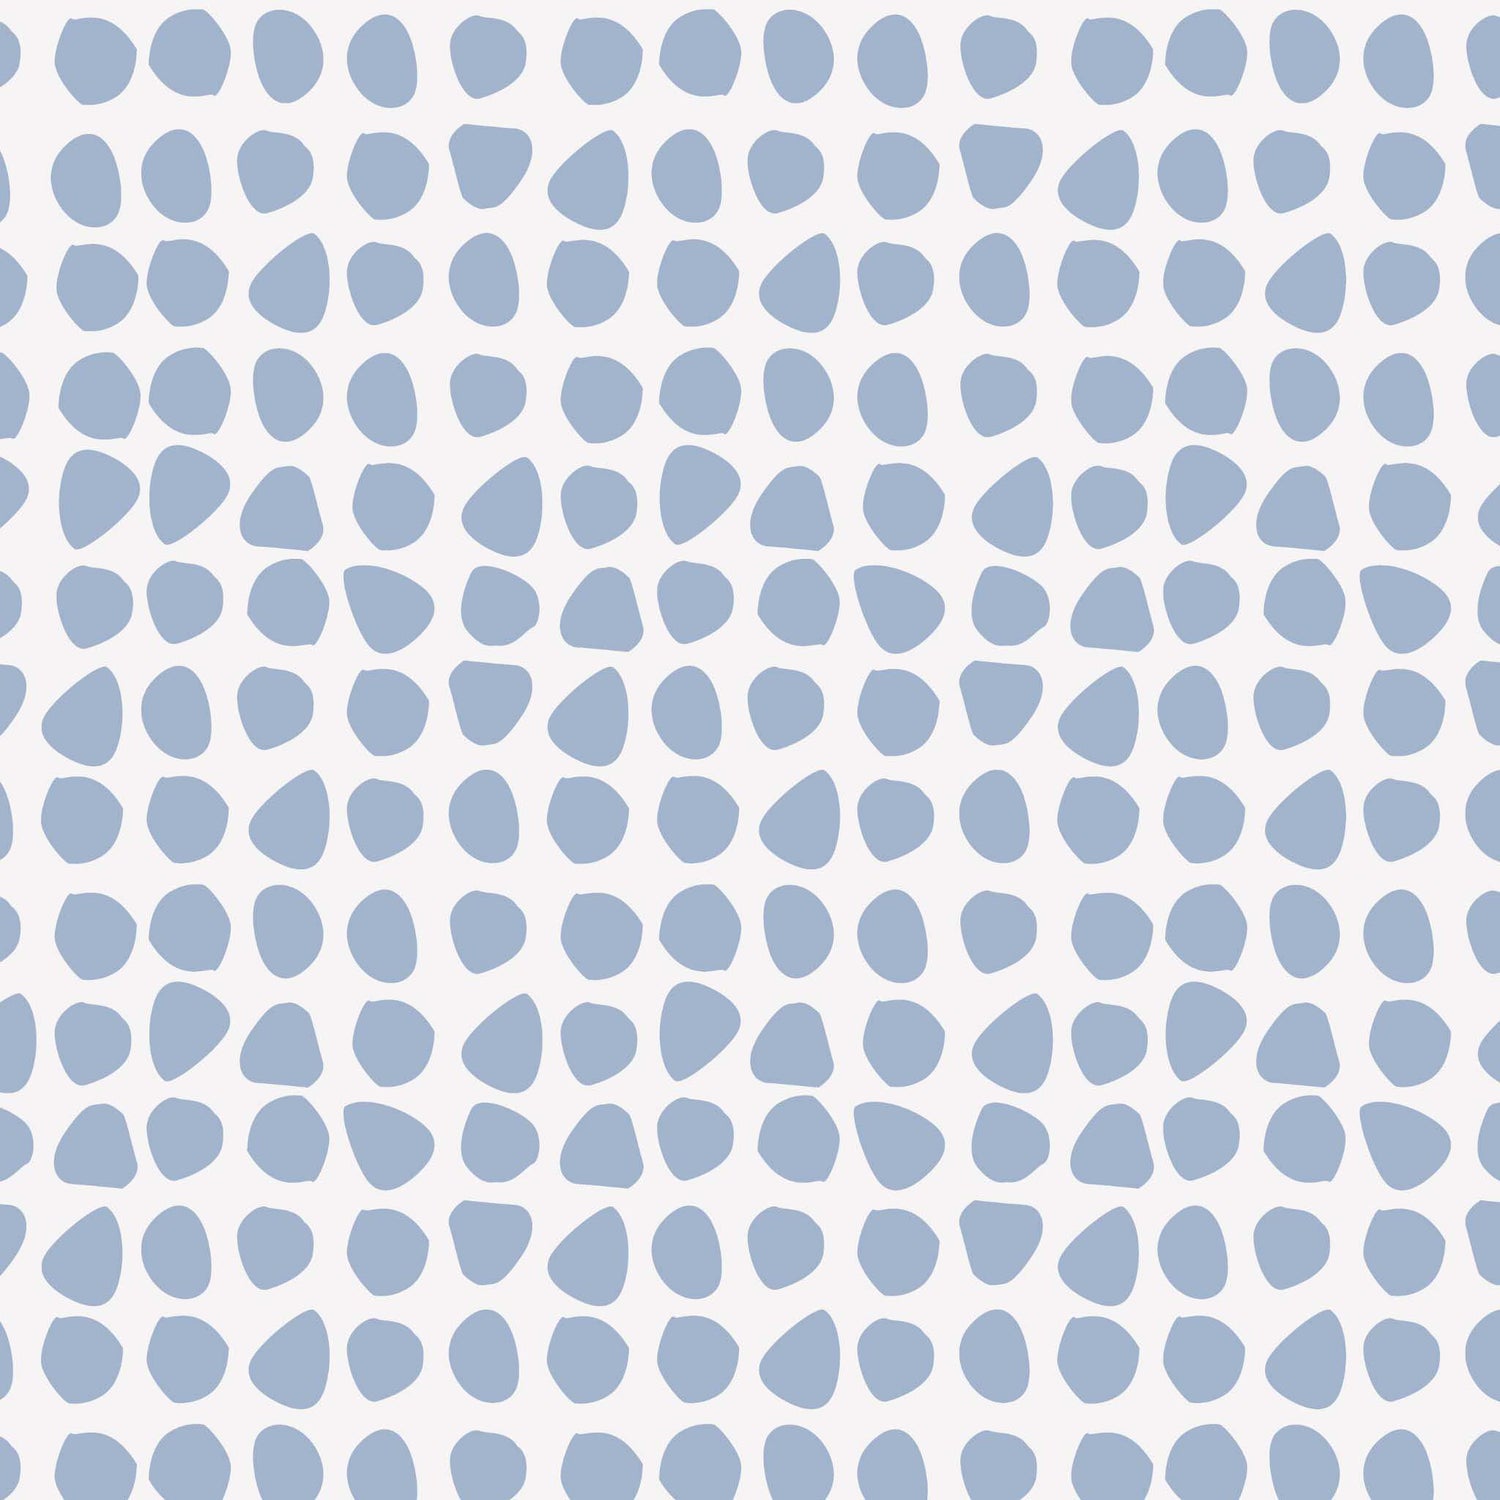 Closeup view of Organic Dots Wallpaper in Blue by artist Brenda Bird